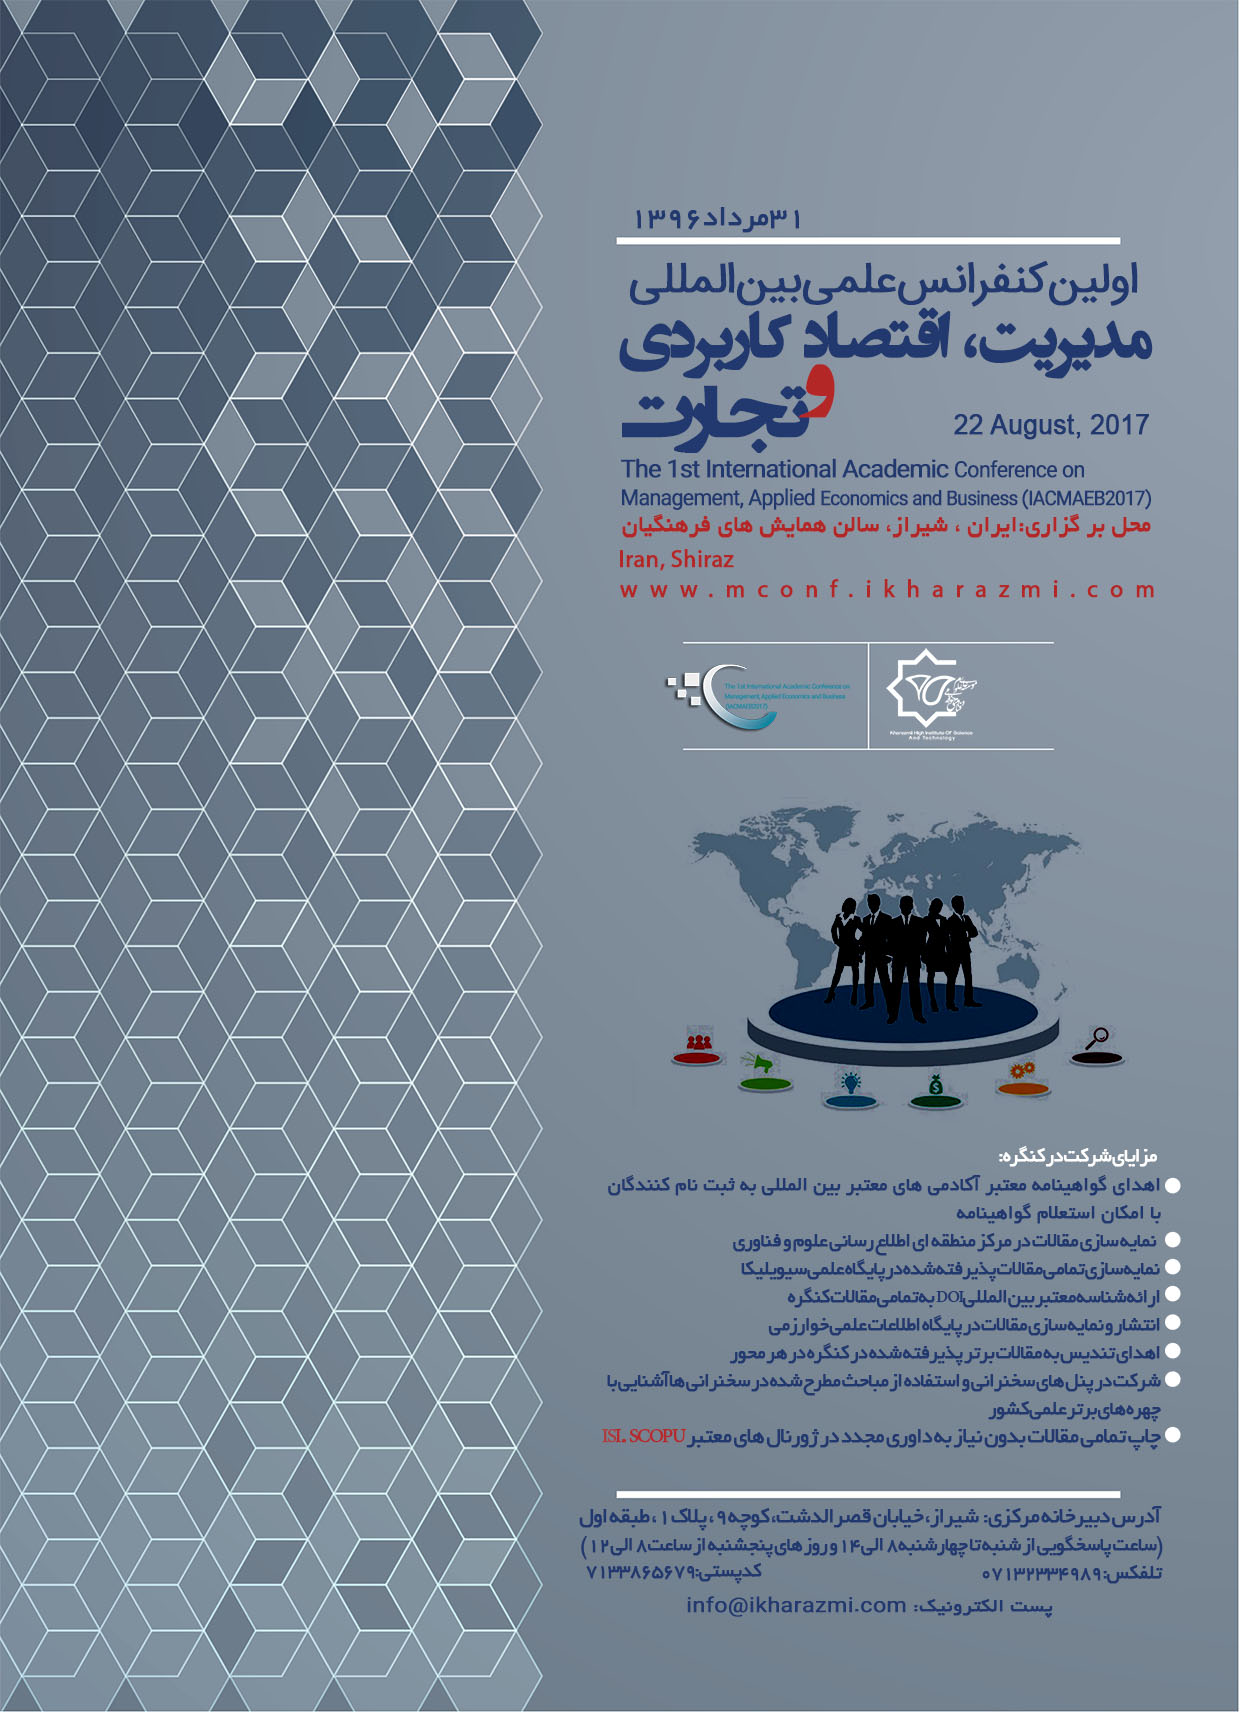 پوستر اولین کنفرانس علمی مدیریت، اقتصاد کاربردی و تجارت